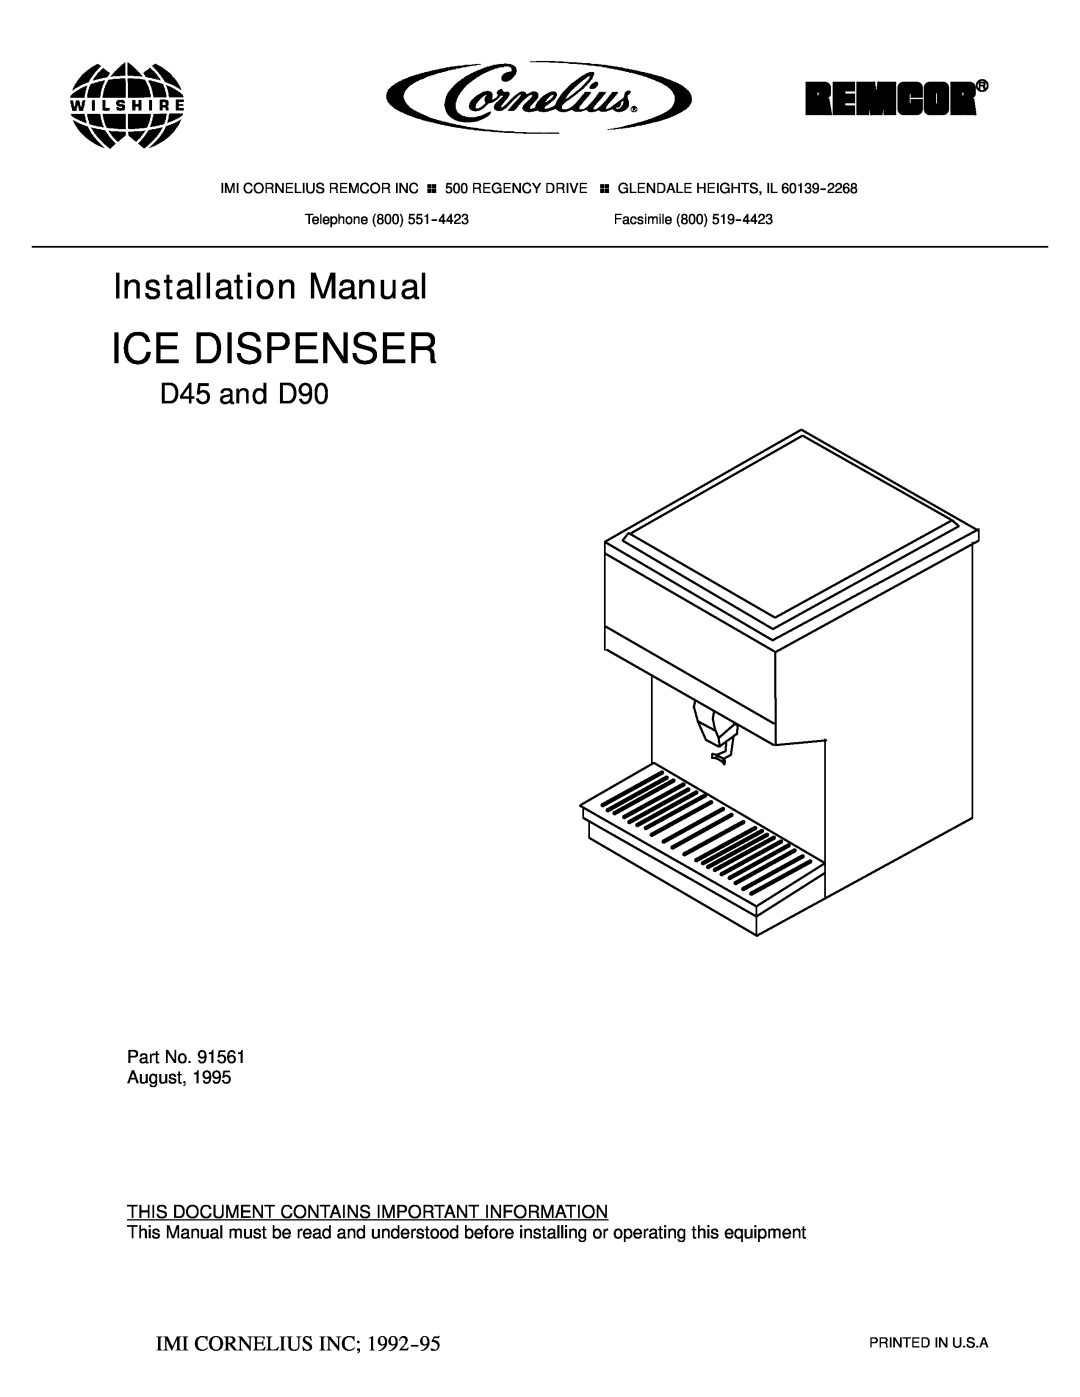 Cornelius installation manual Ice Dispenser, Installation Manual, D45 and D90, Ó Imi Cornelius Inc 